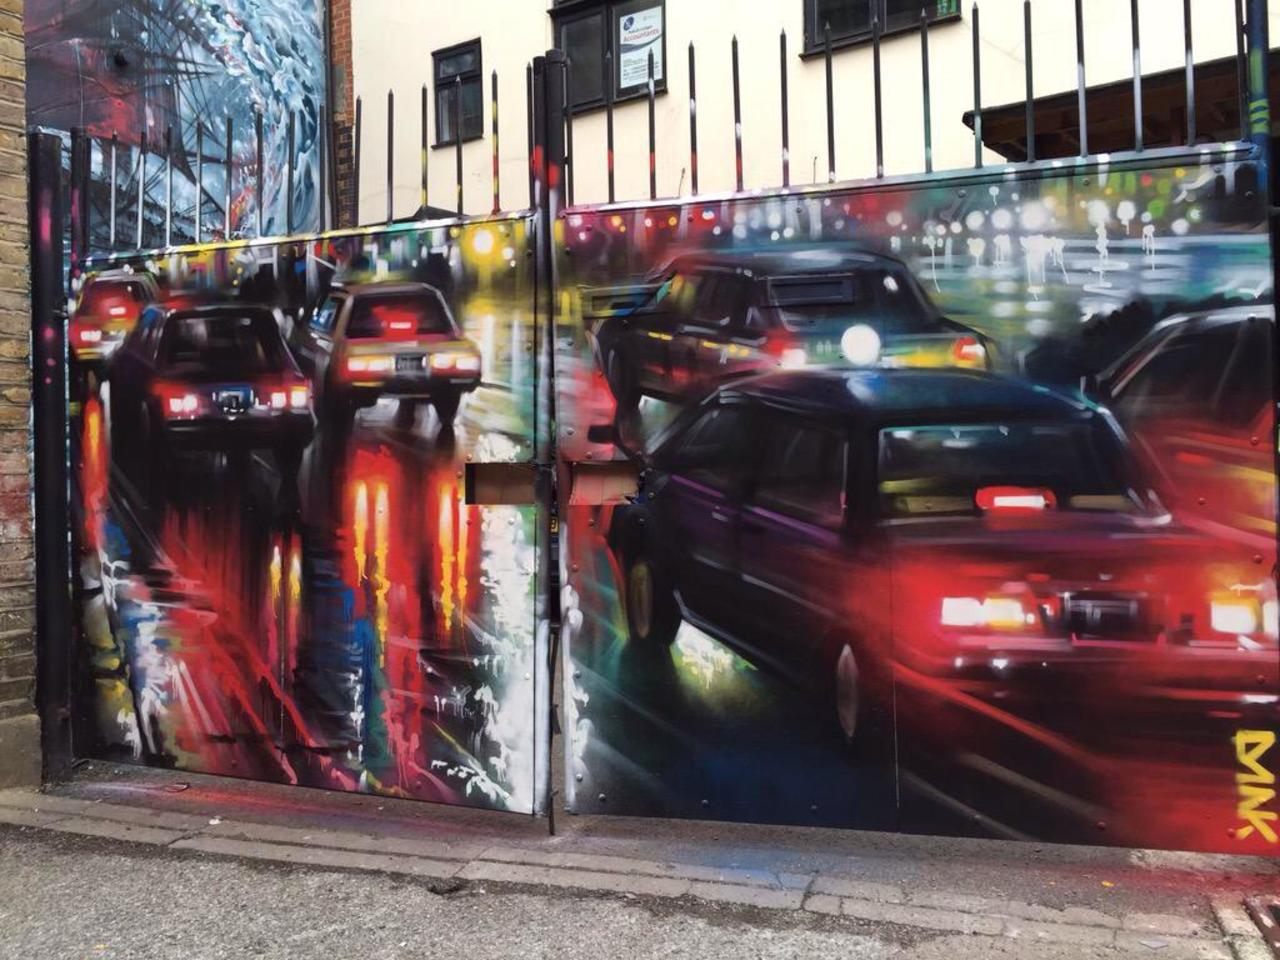 New Street Art by DanKitchener in Brick Lane London 

#art #graffiti #mural #streetart http://t.co/7sFJJykdL8